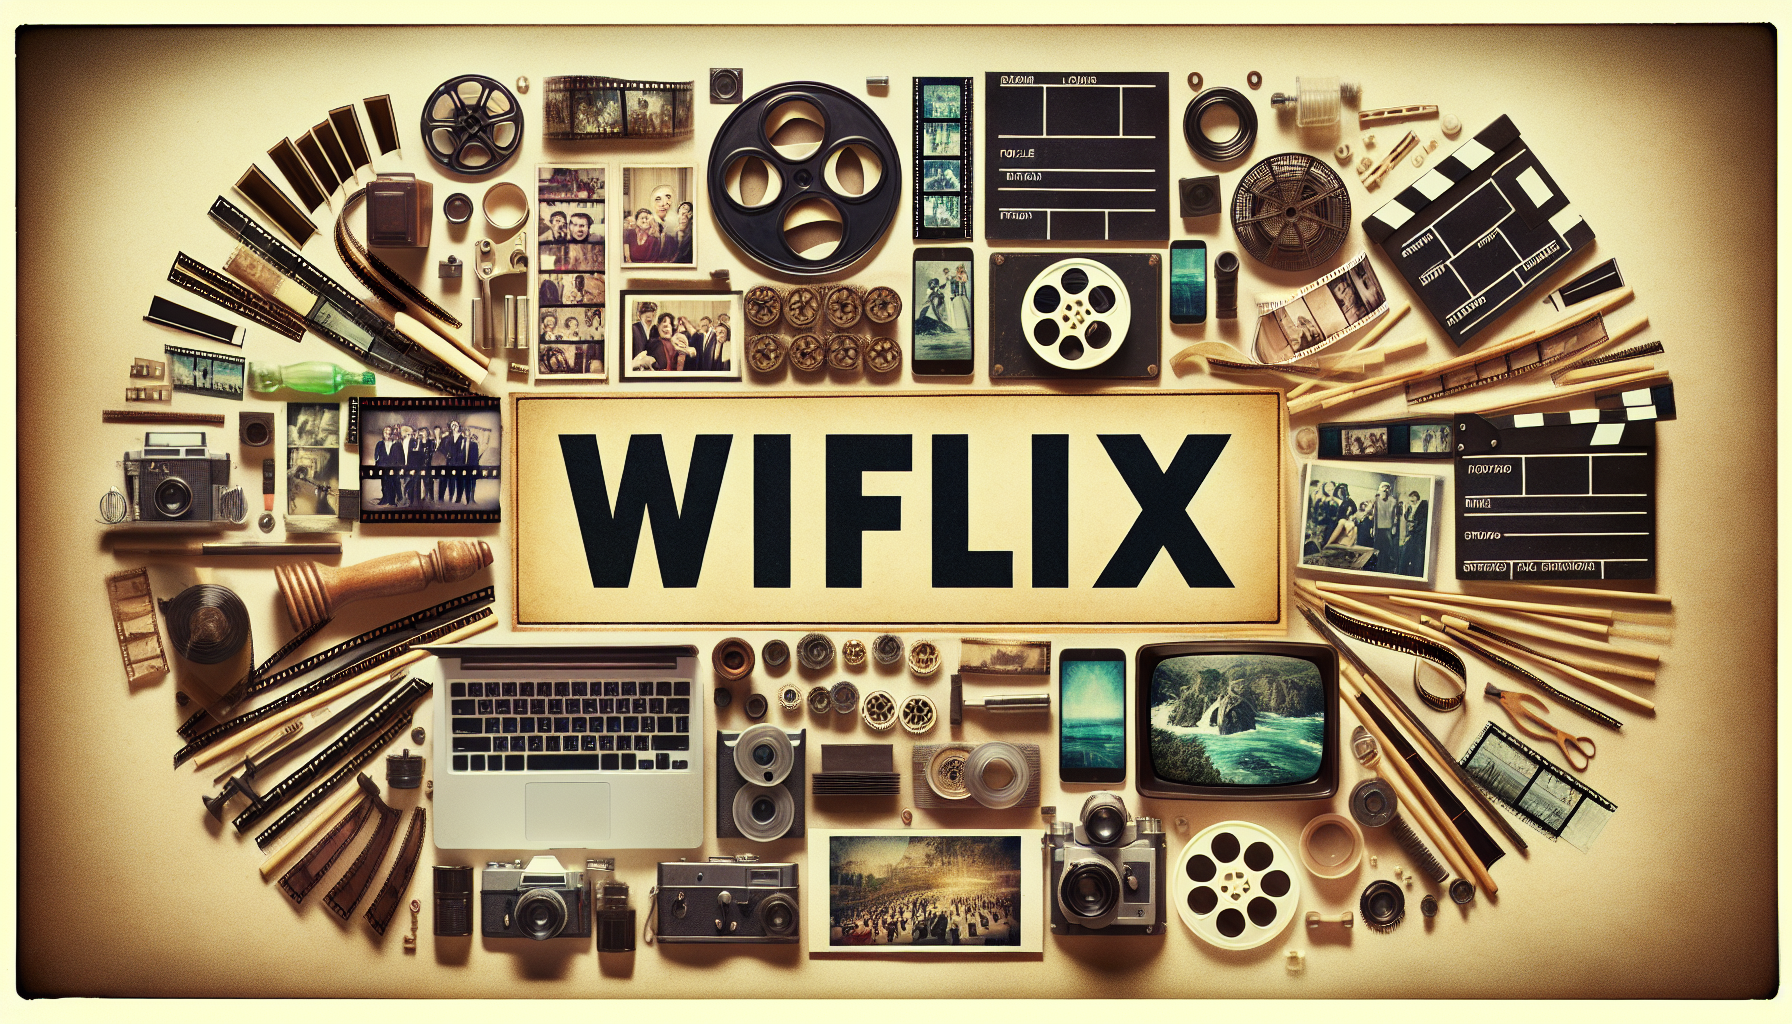 découvrez wiflix, la plateforme de streaming qui réinvente l'univers cinématographique avec une expérience révolutionnaire.